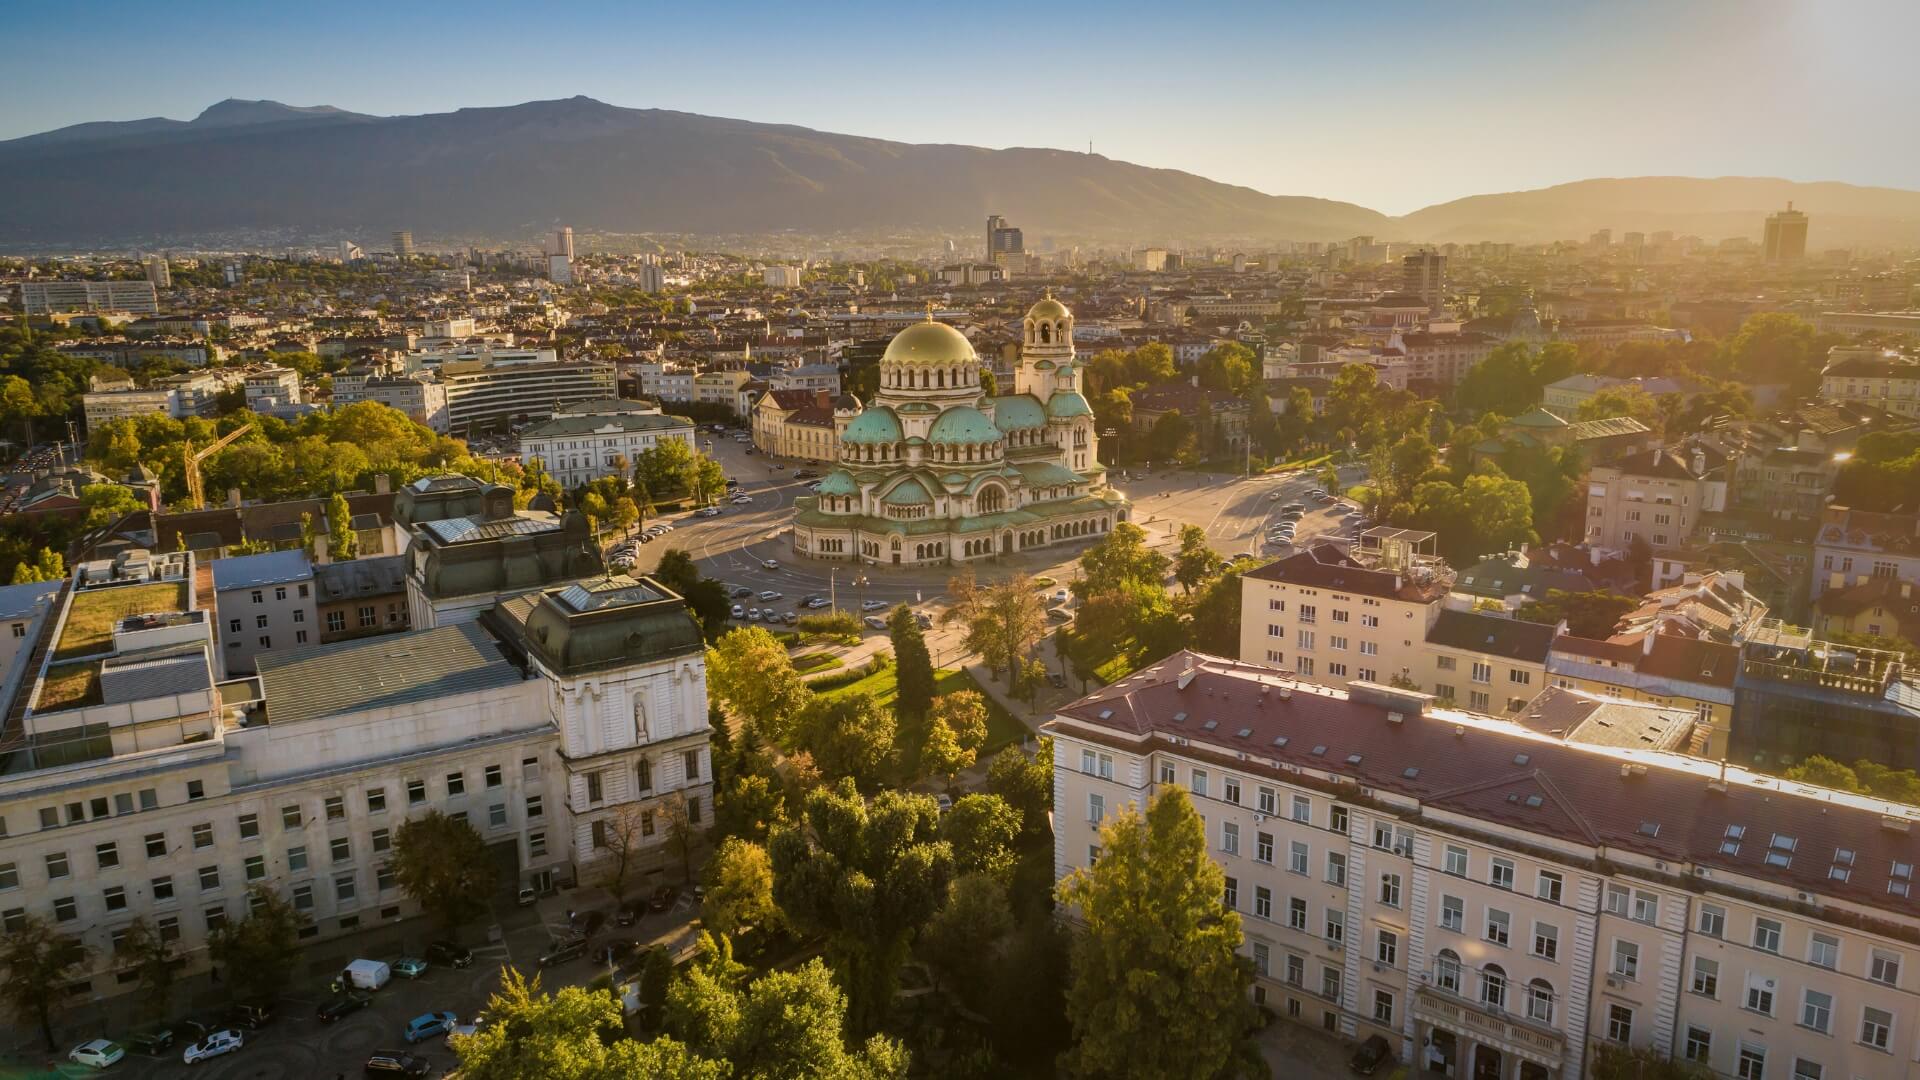 Destination: Sofia, Bulgaria